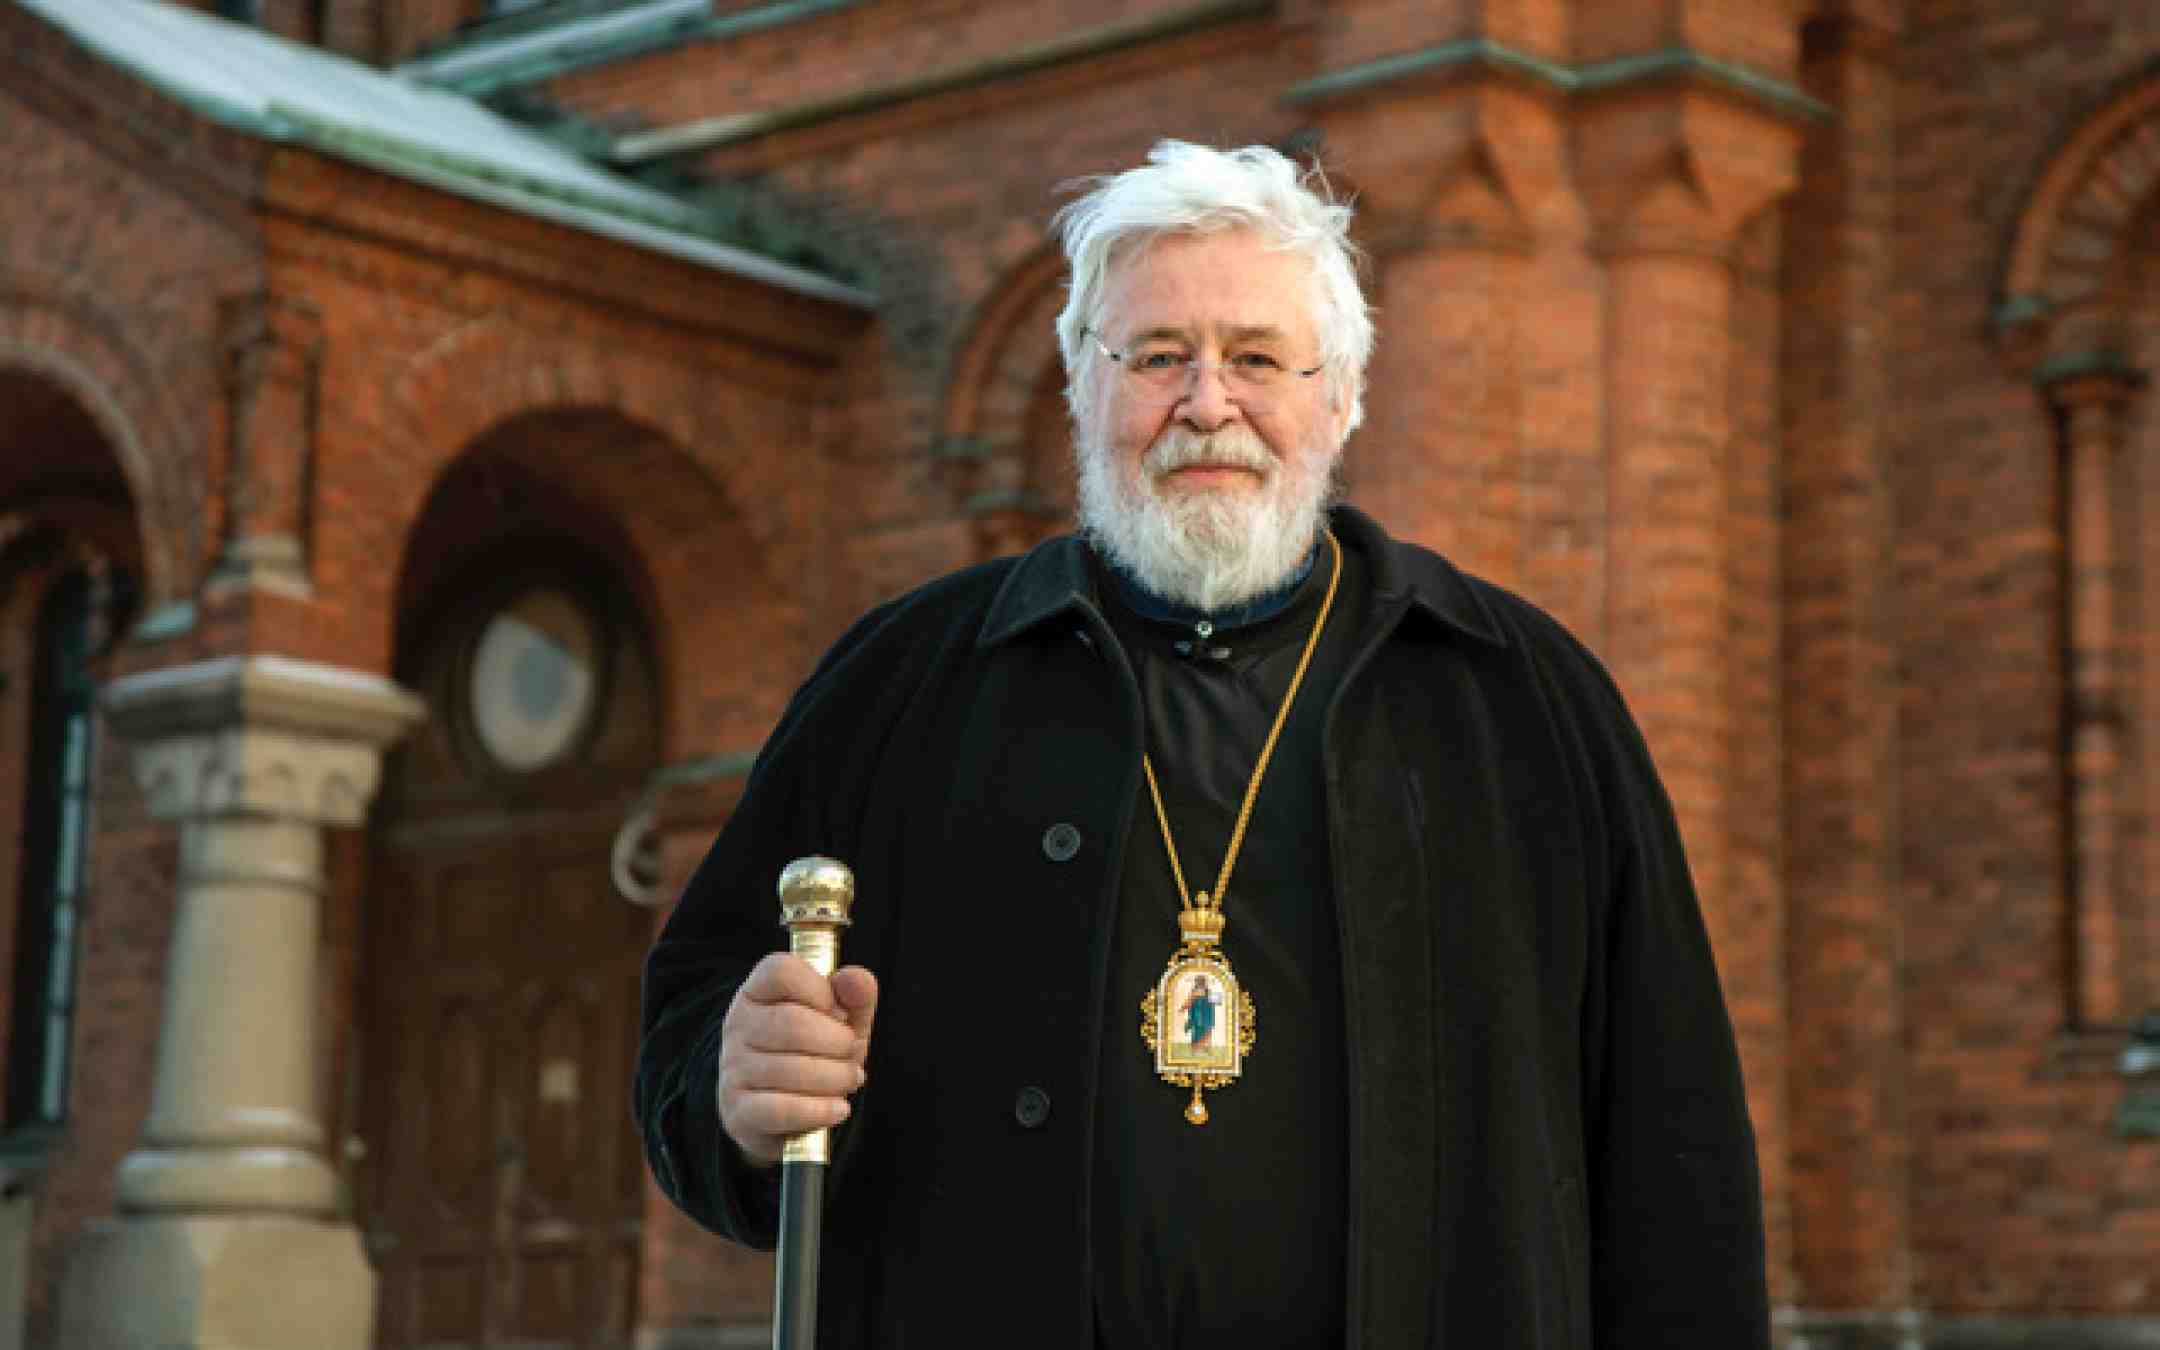 Arkkipiispa Leo Uspenskin katedraalin edustalla piispan paimensauva kädessään